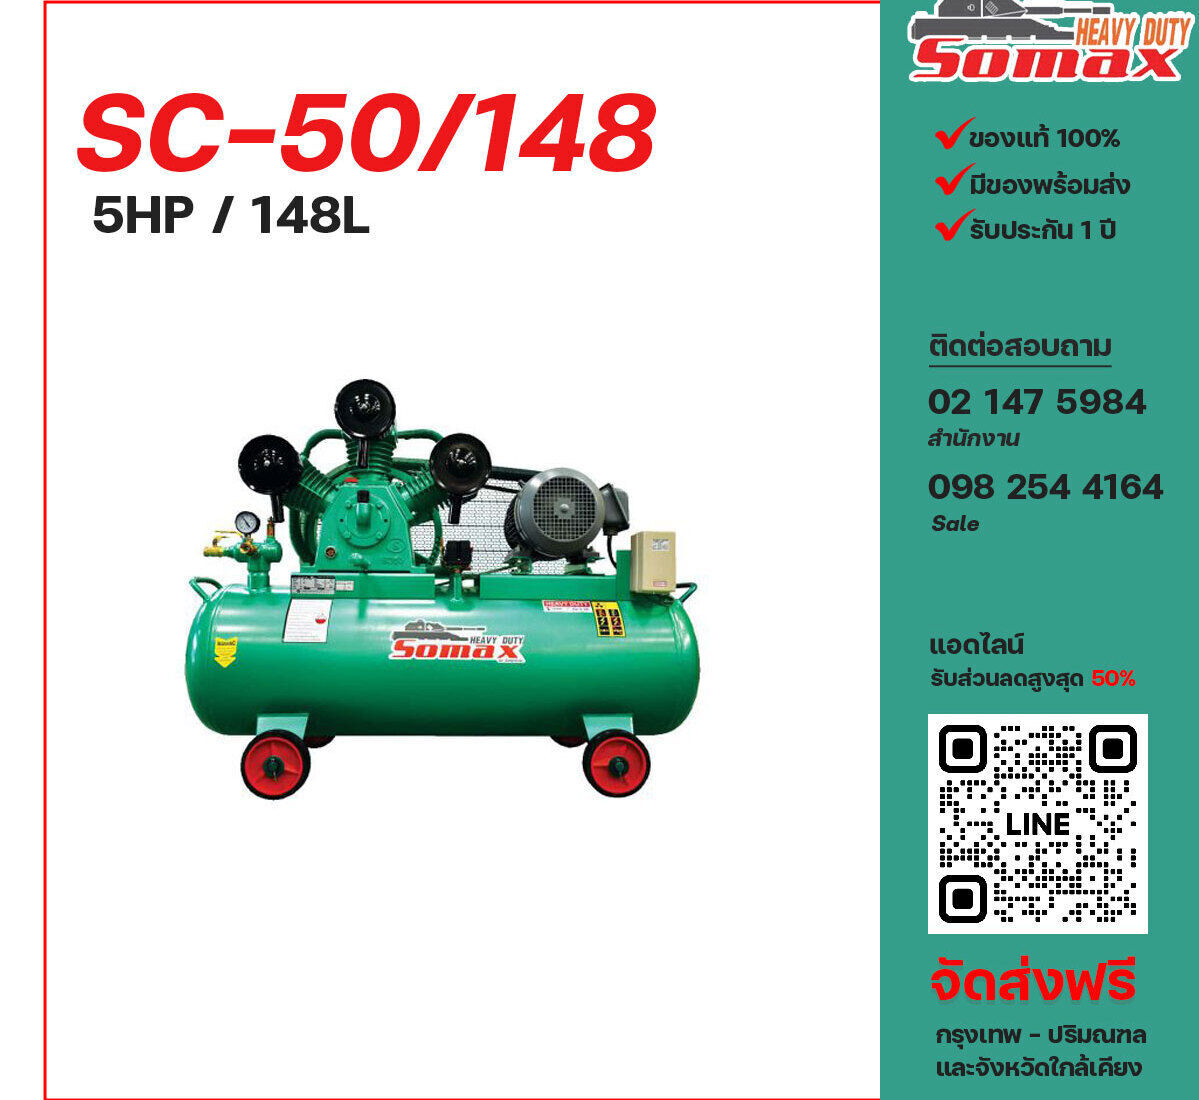 ปั๊มลมโซแม็กซ์ SOMAX SC-50/148 220V/380V ปั๊มลมลูกสูบ ขนาด 3 สูบ 5 แรงม้า 148 ลิตร SOMAX พร้อมมอเตอร์ ไฟ 220V/380V ส่งฟรี กรุงเทพฯ-ปริมณฑล รับประกัน 1 ปี